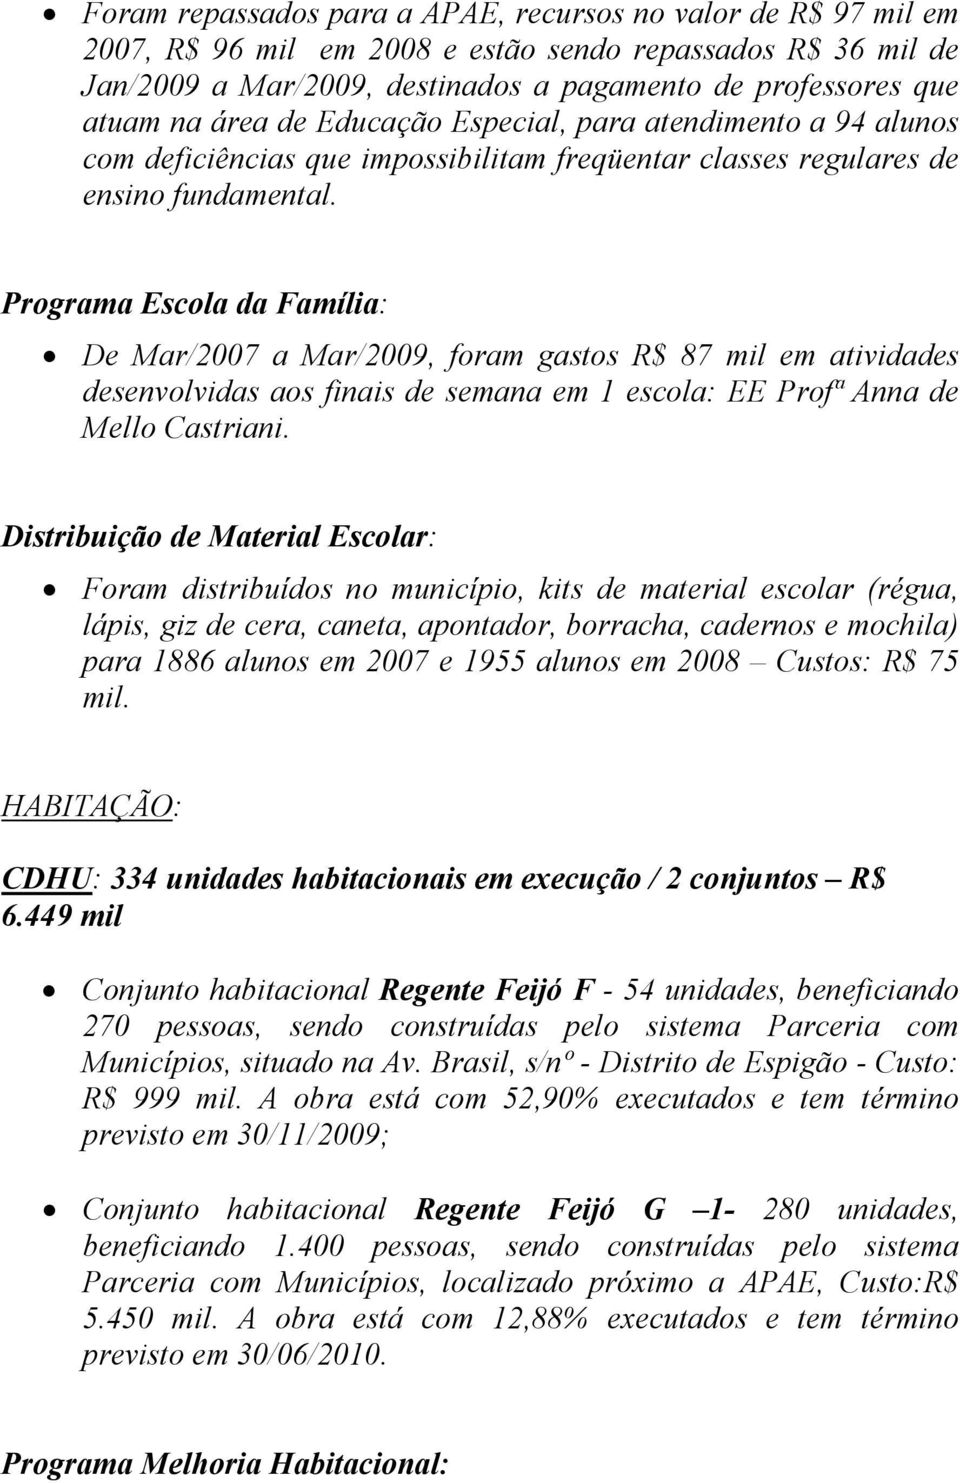 Programa Escola da Família: De Mar/2007 a Mar/2009, foram gastos R$ 87 mil em atividades desenvolvidas aos finais de semana em 1 escola: EE Profª Anna de Mello Castriani.